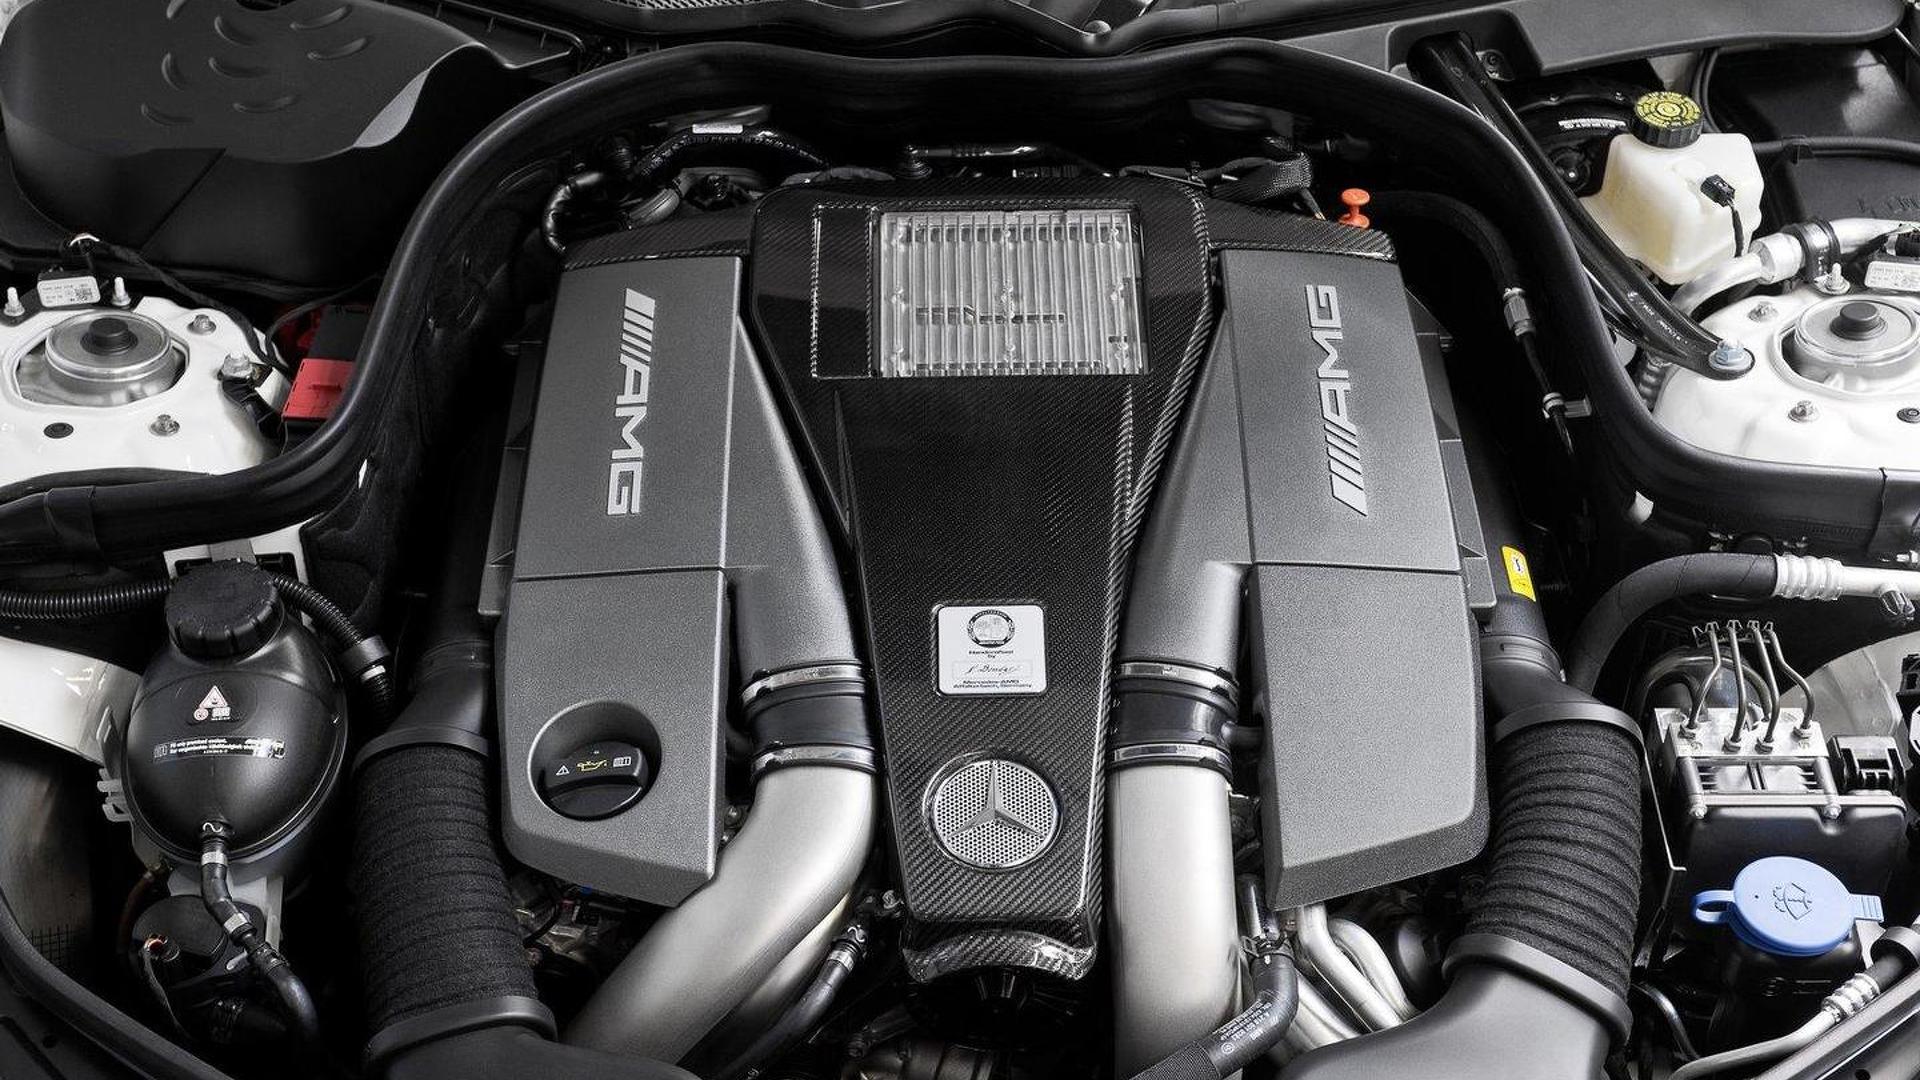 Official Mercedes E 63 AMG gets new AMG 5.5liter V8 biturbo engine